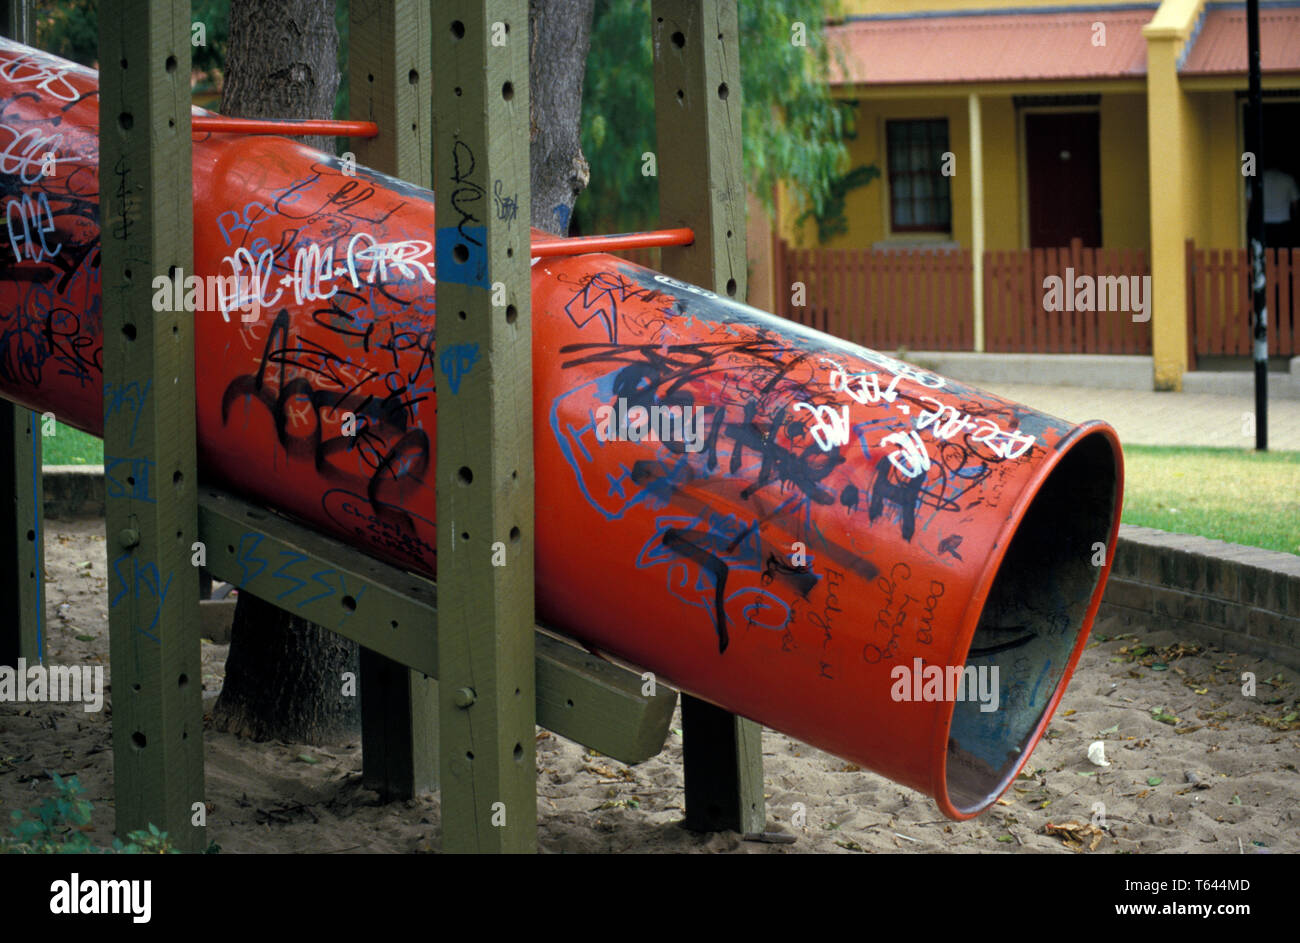 Parco giochi per bambini nell'interno della città di Sydney soggetto ad atti vandalici da graffiti. Nuovo Galles del Sud, Australia. Foto Stock